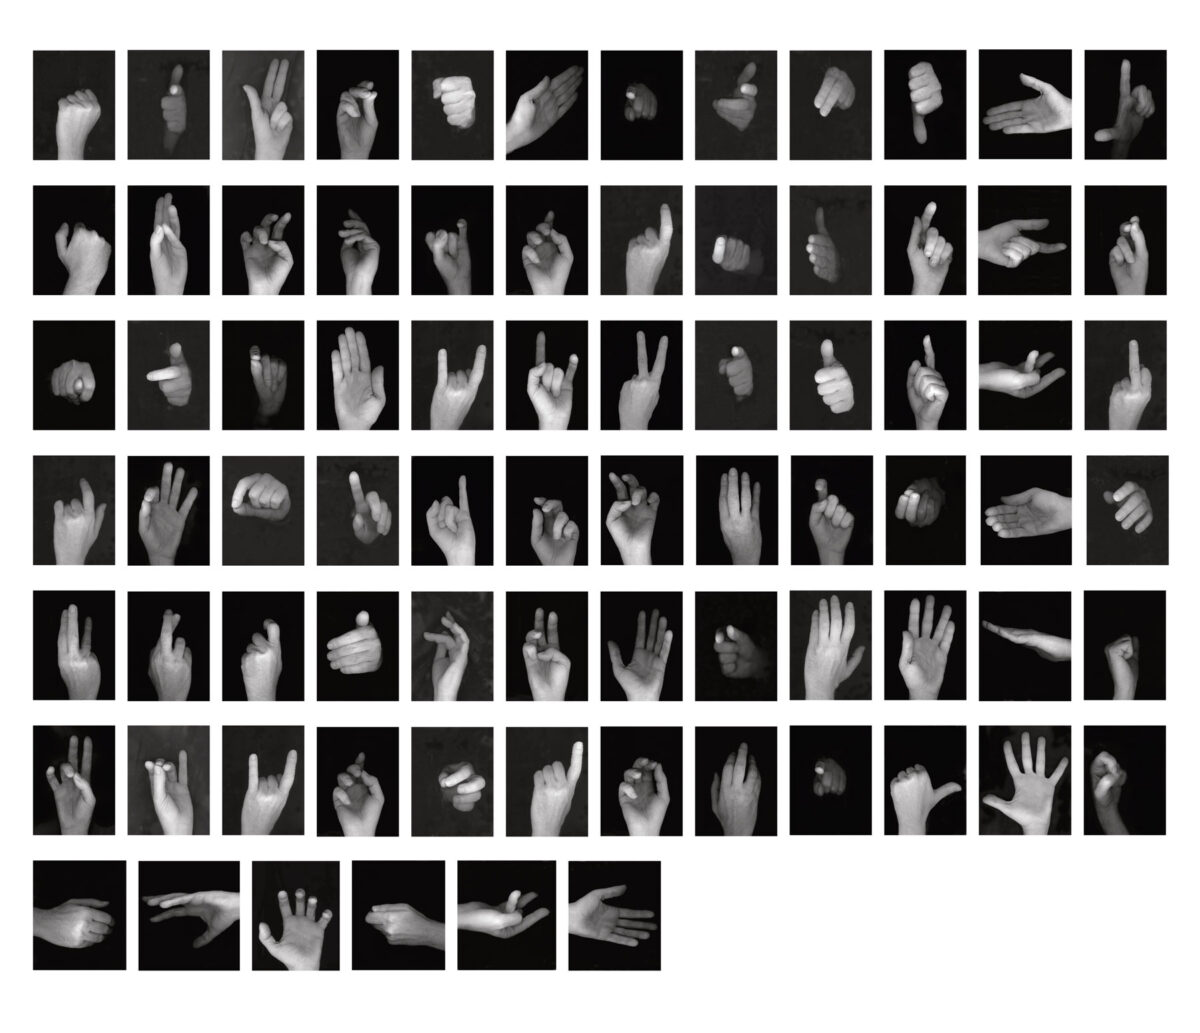 Γιώργος Χατζημιχάλης, «Χειρονομίες», 2007, 78 μαυρόασπρες φωτογραφίες σε ψηφιακή εκτύπωση, 140x300 εκ., ιδιωτική συλλογή.